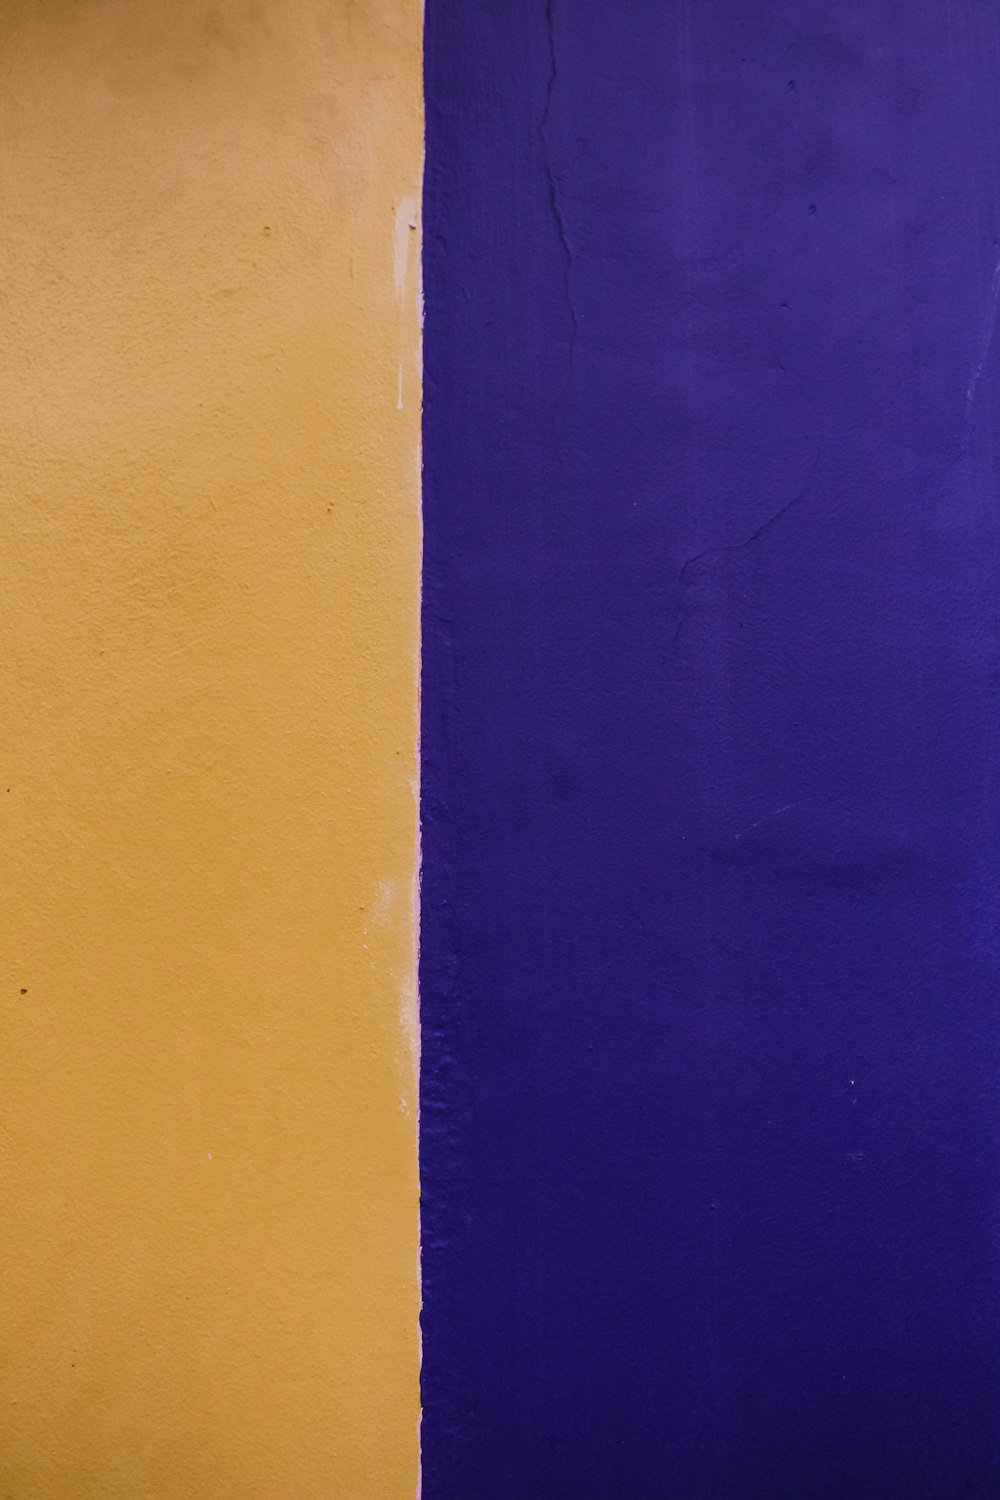 時計が描かれた黄色と紫の壁